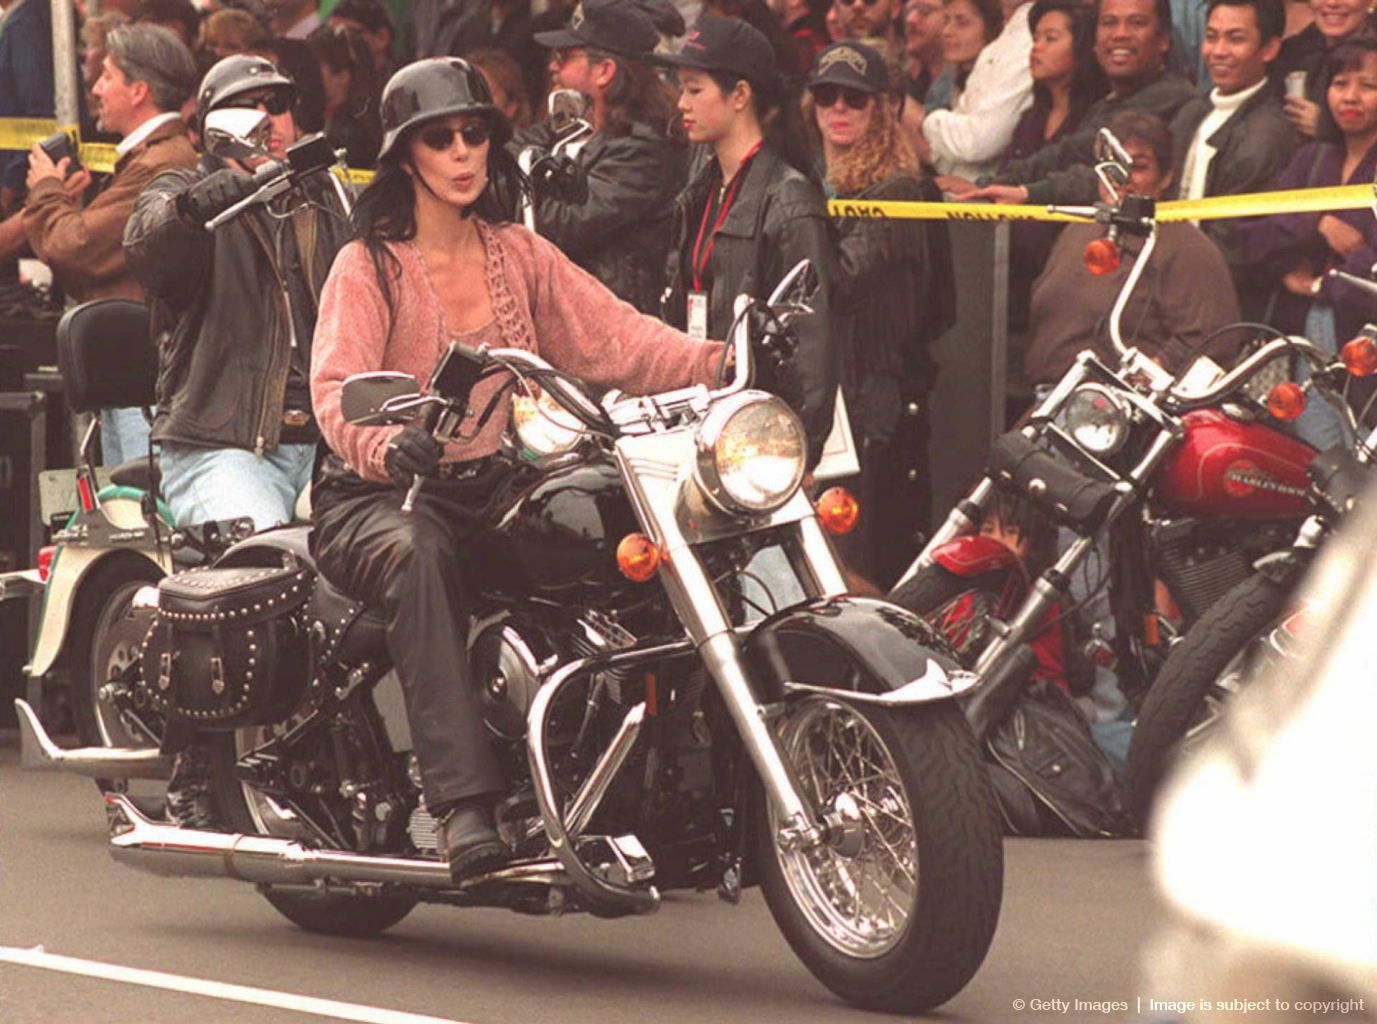 Cher on a bike